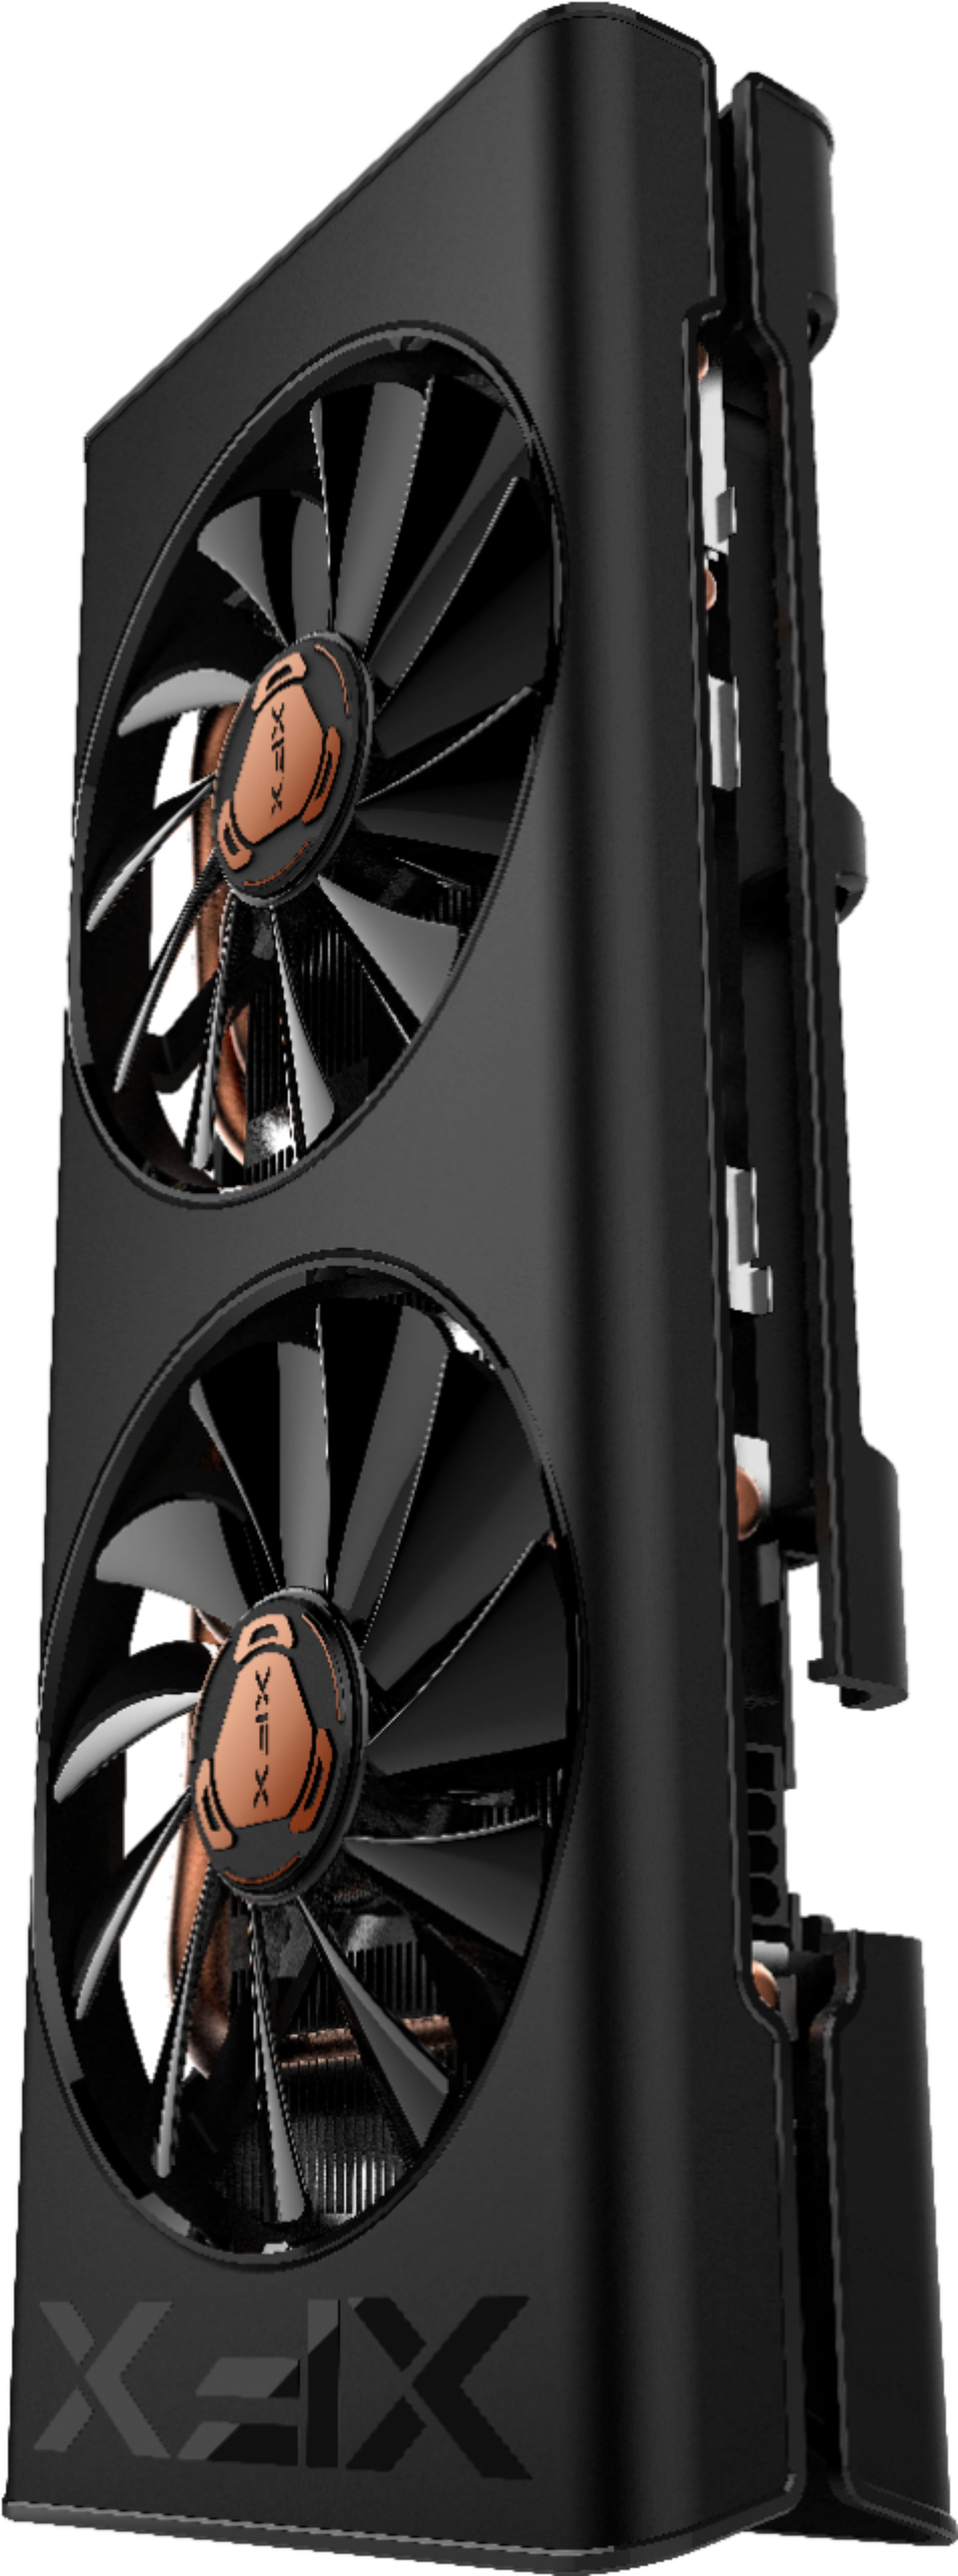 XFX THICC II Pro AMD Radeon RX 5500 XT 